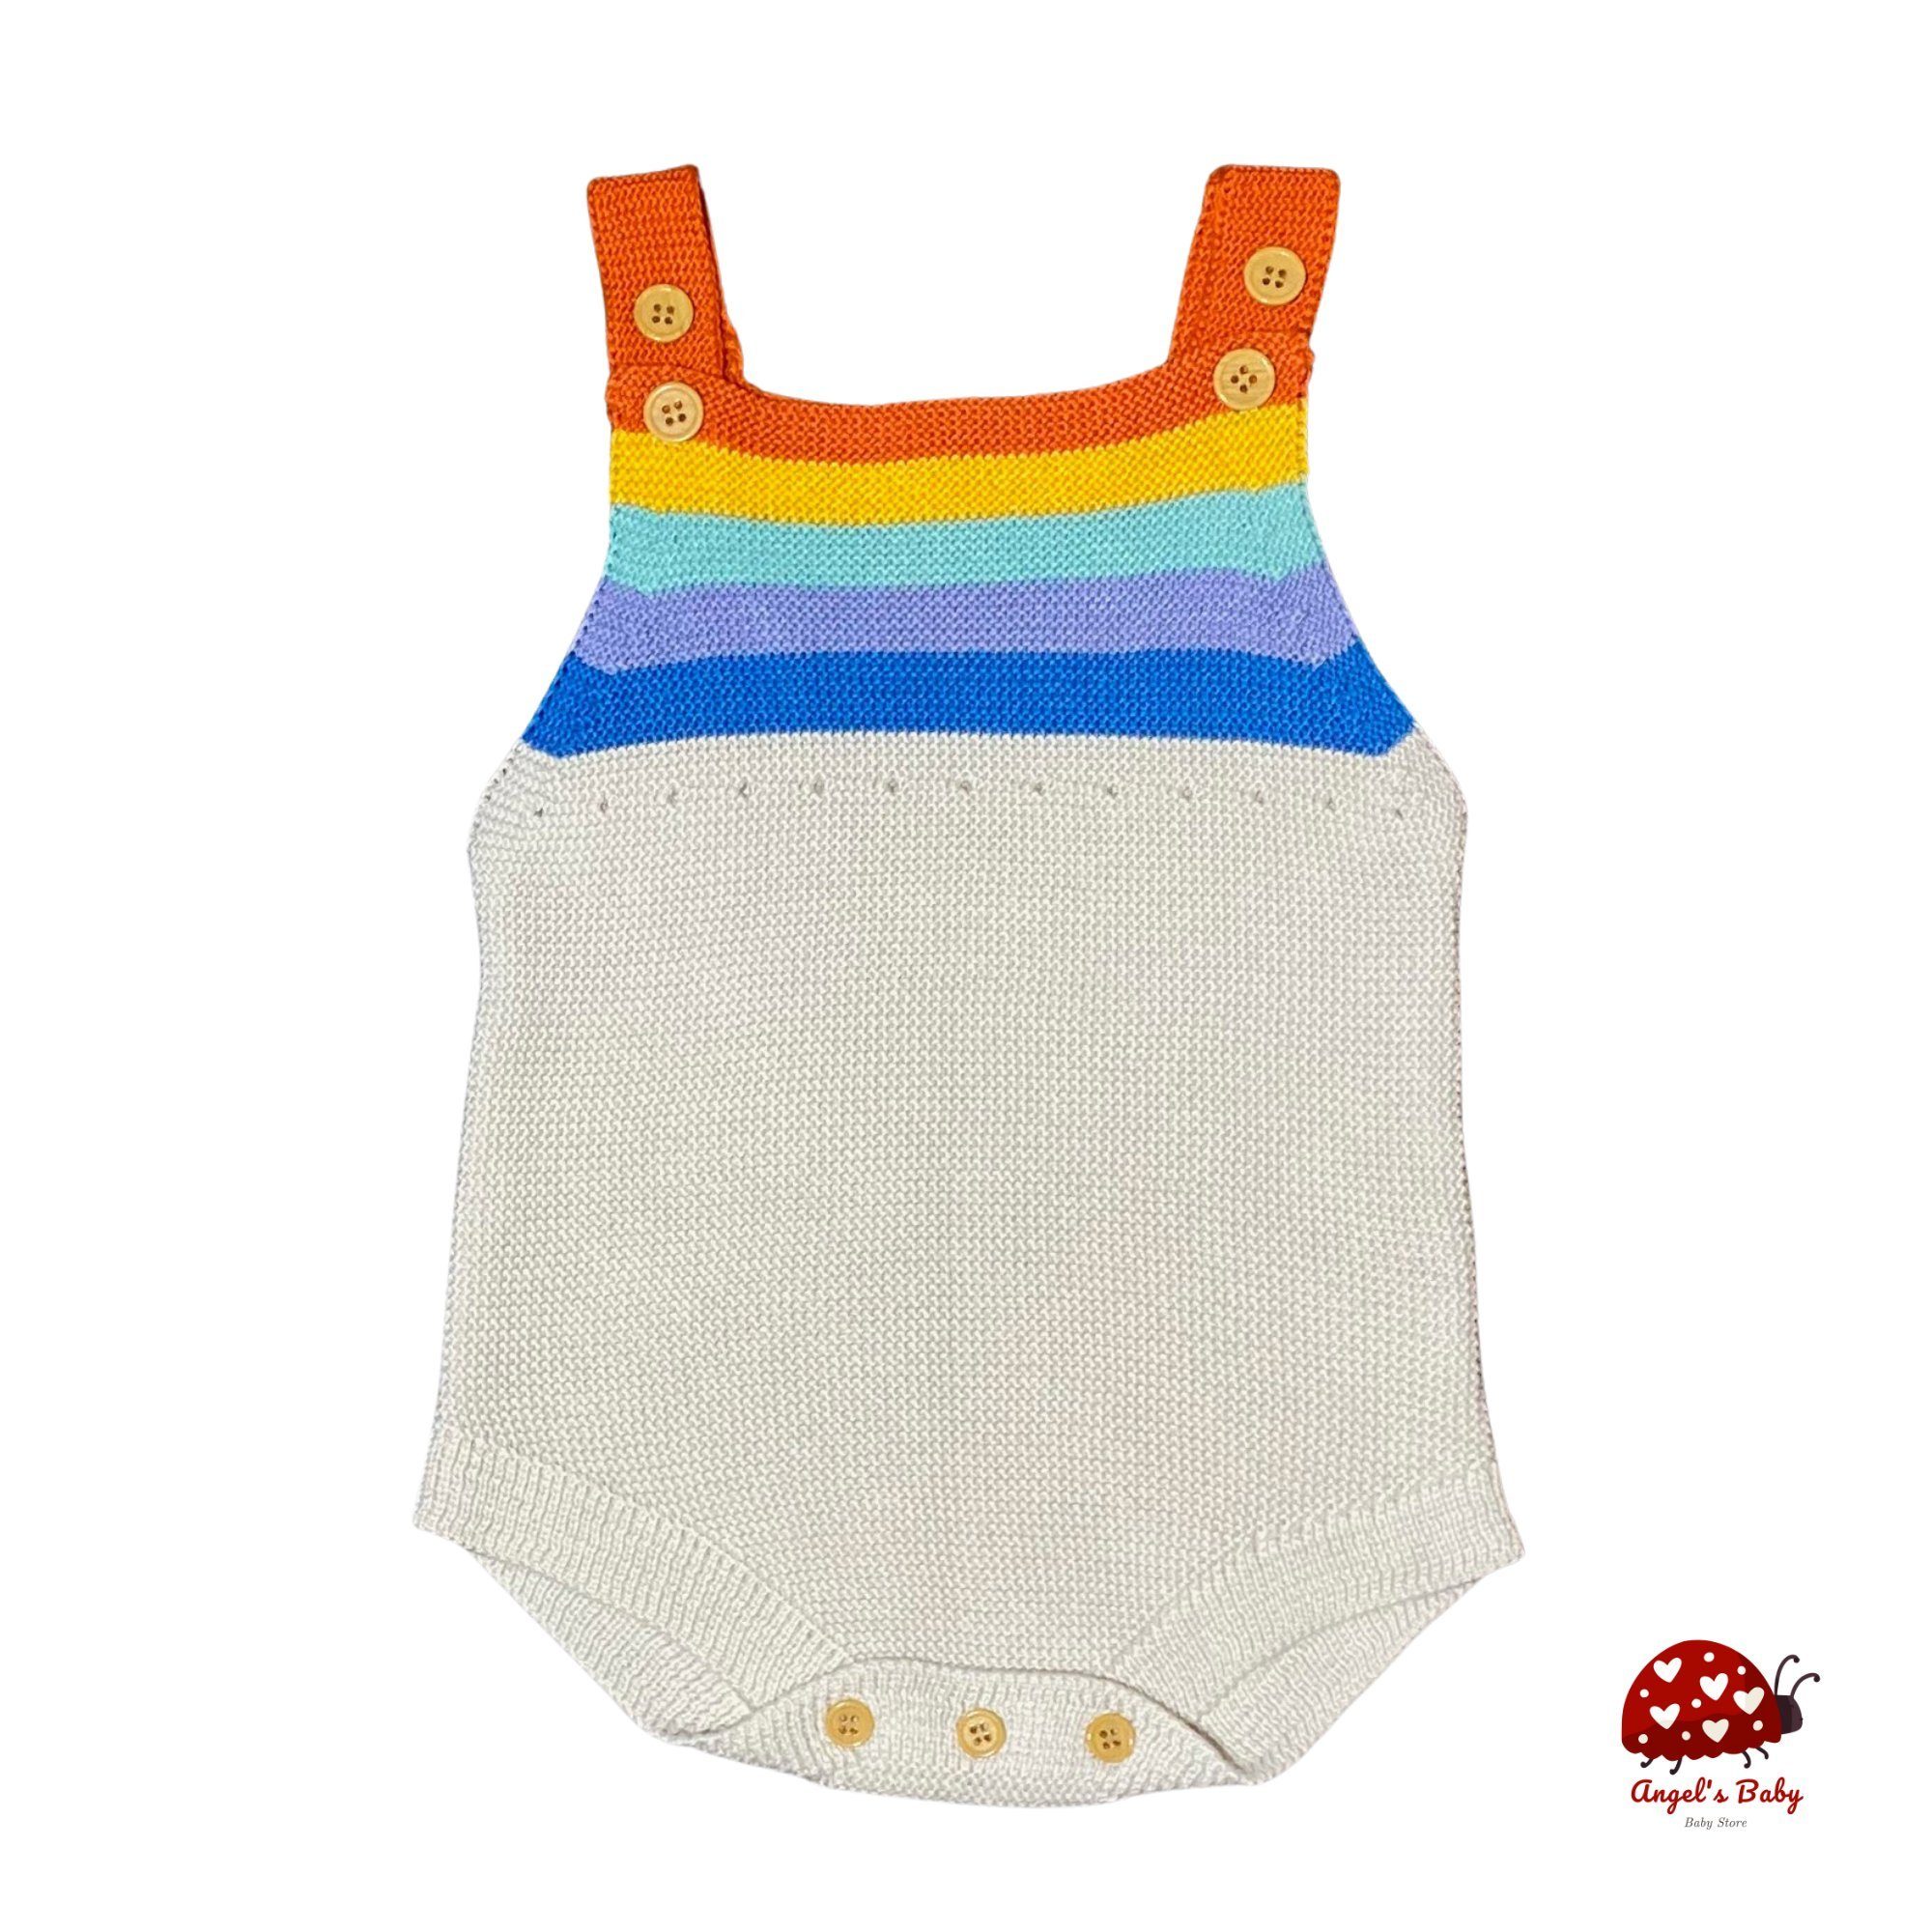 Angel's Baby Strampler »Baby Strampler kurzer Jumpsuit in Strick-Optik aus  Baumwolle in Natur- Erdton oder Ecru mit bunten Steifen« online kaufen |  OTTO